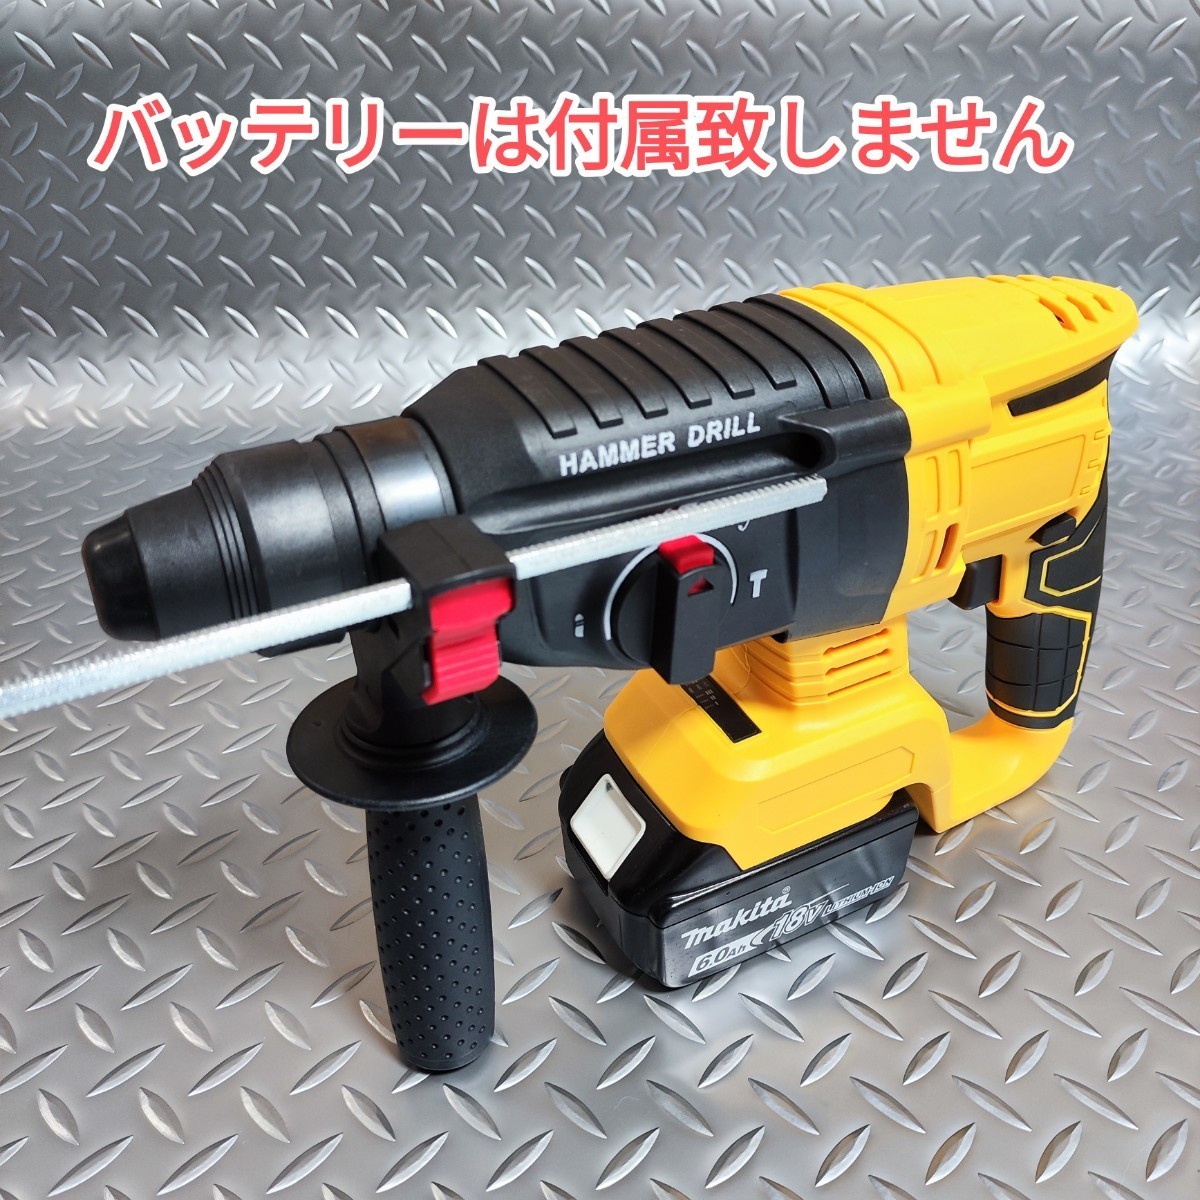 【黄色】ハンマードリル マキタ 互換品 18V はつり 電動ハンマー_画像2